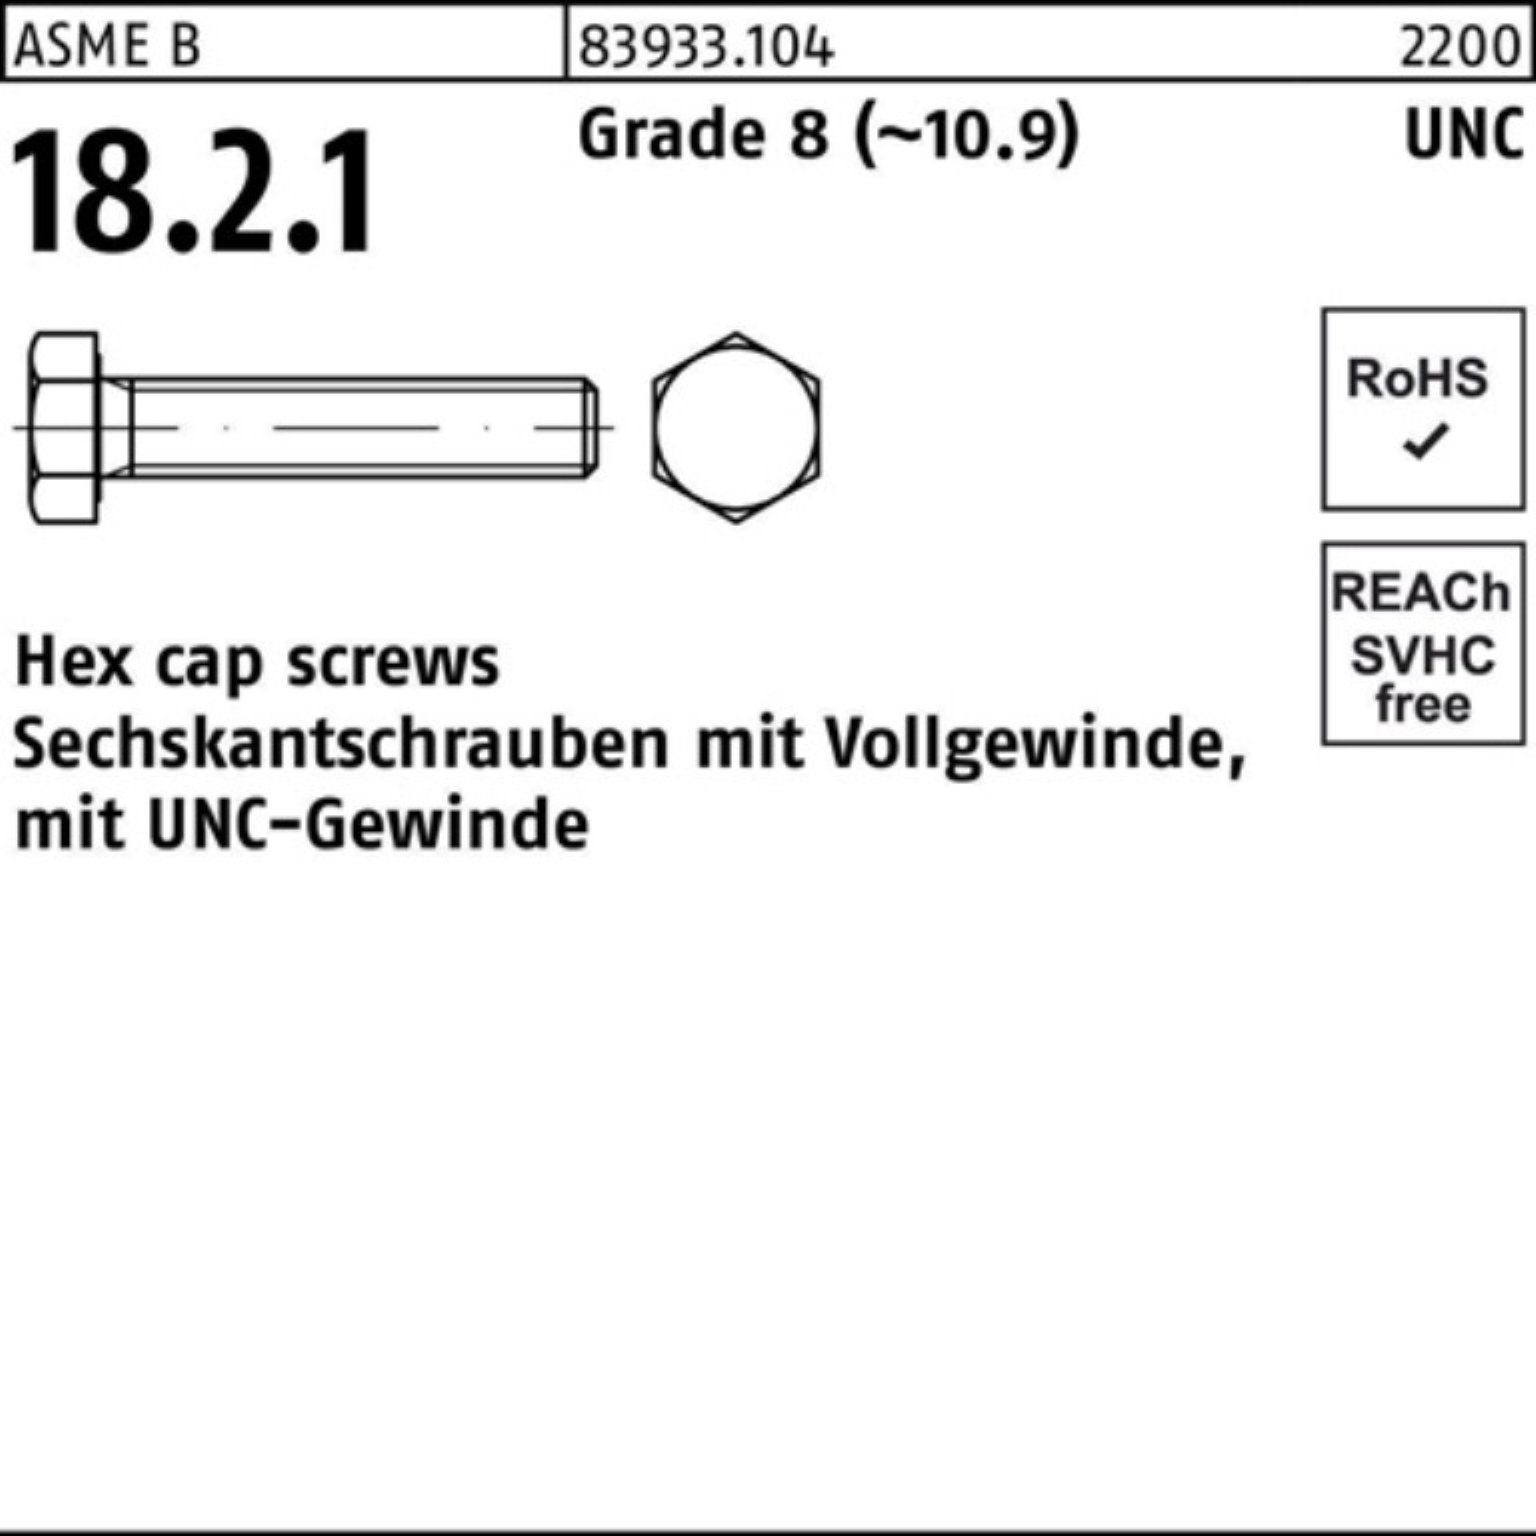 Reyher Sechskantschraube 100er Pack Sechskantschraube R 83933 UNC-Gewinde VG 3/4x 2 1/2 Grade 8